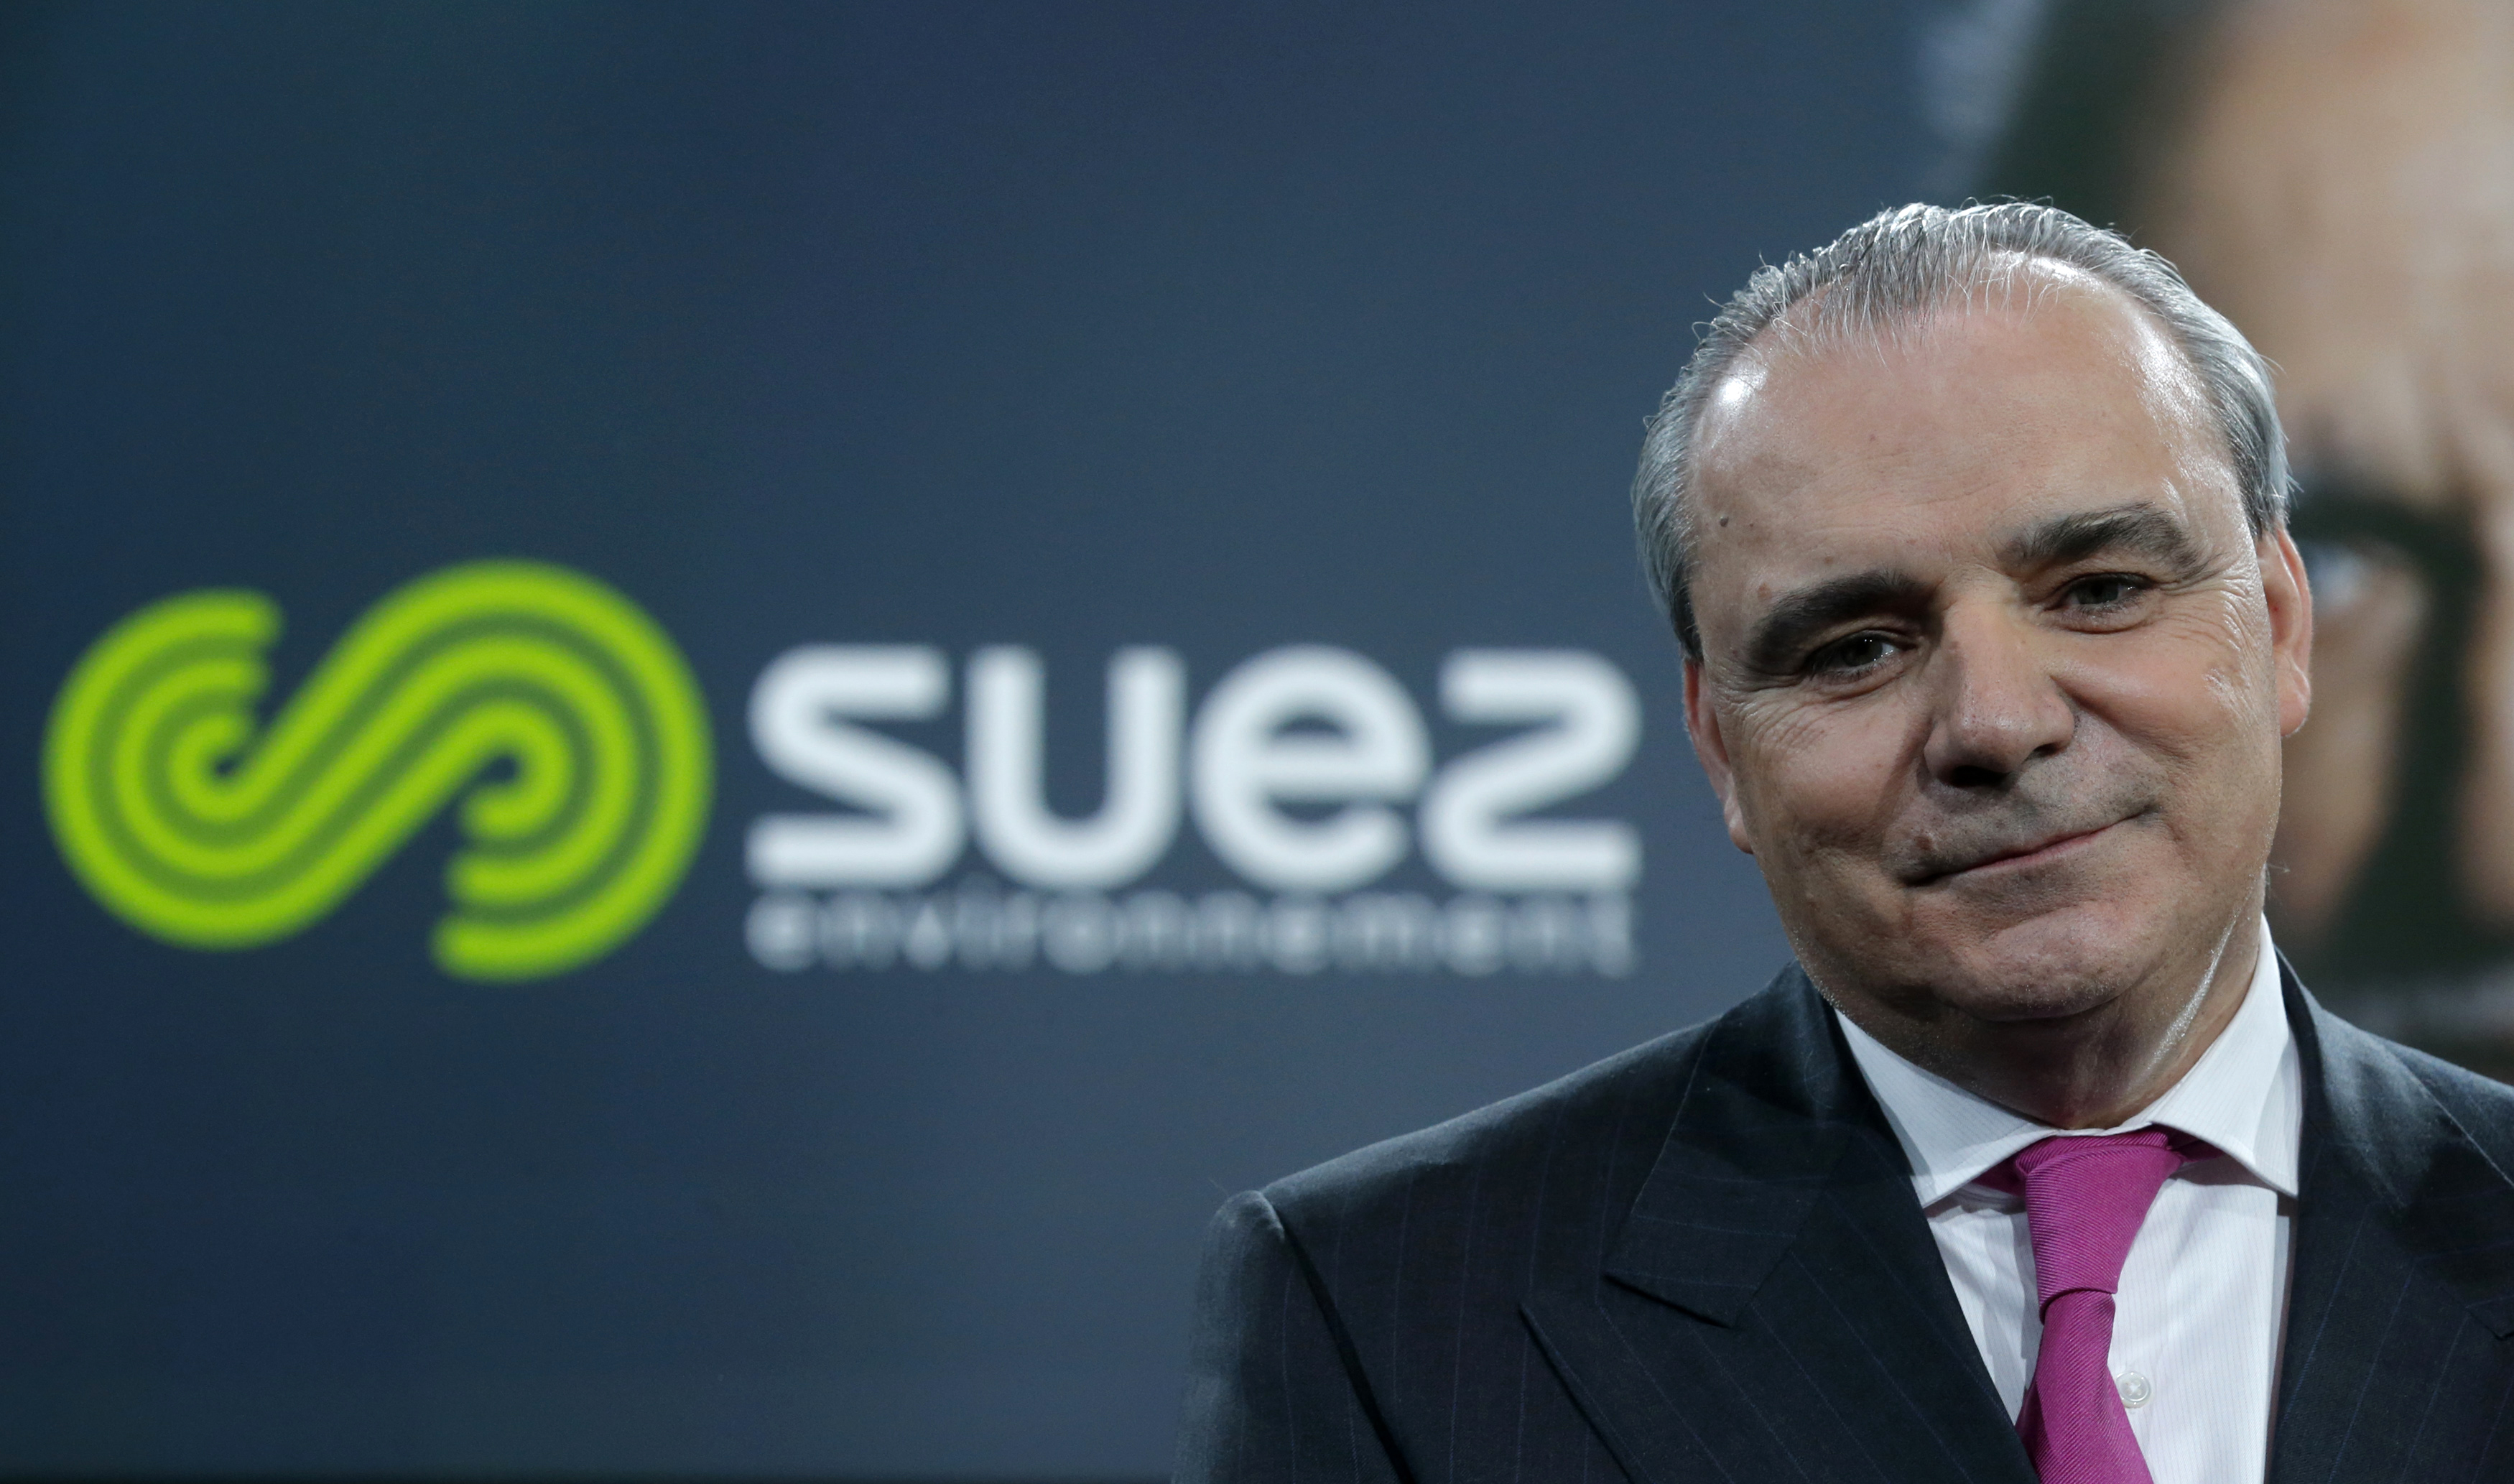 Le président de Suez, Jean-Louis Chaussade, quittera son poste en mai